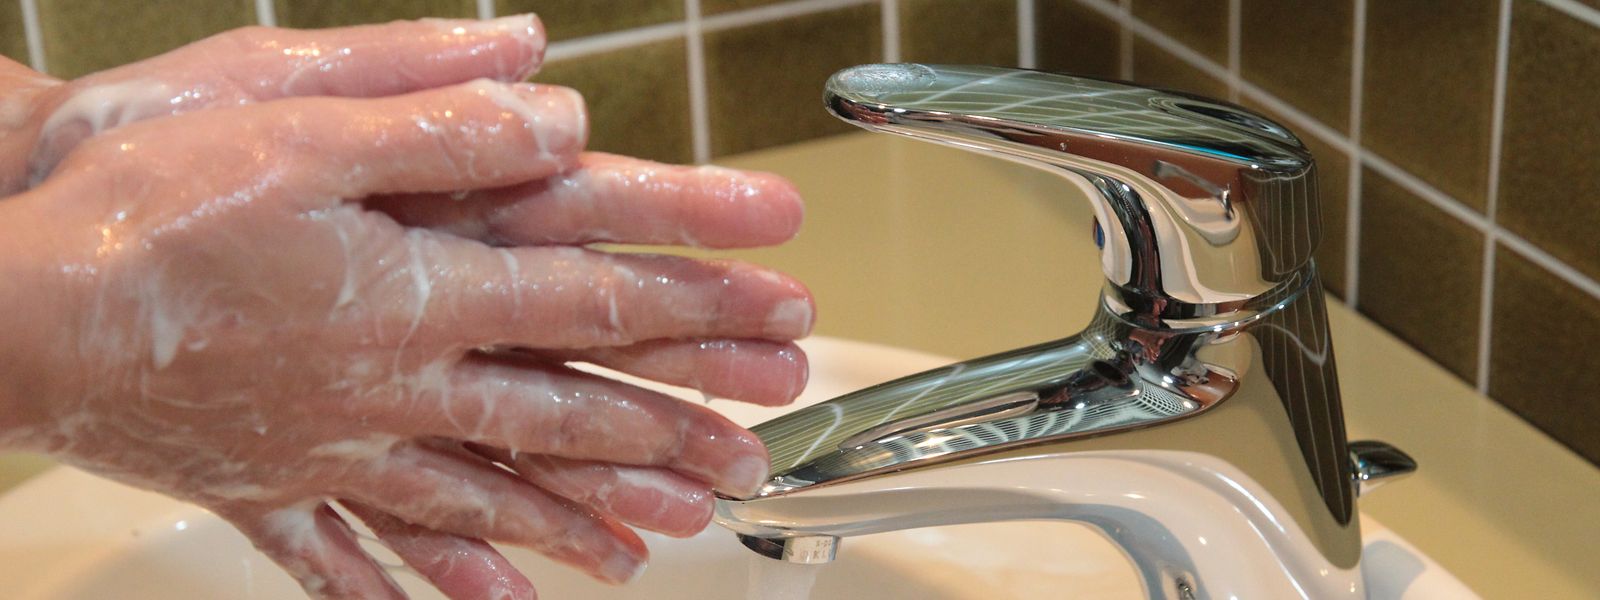 Hände sollte man nicht nur waschen, wenn sie schmutzig sind, sondern auch nach dem Naseputzen, dem Gang zur Toilette und vor den Mahlzeiten.